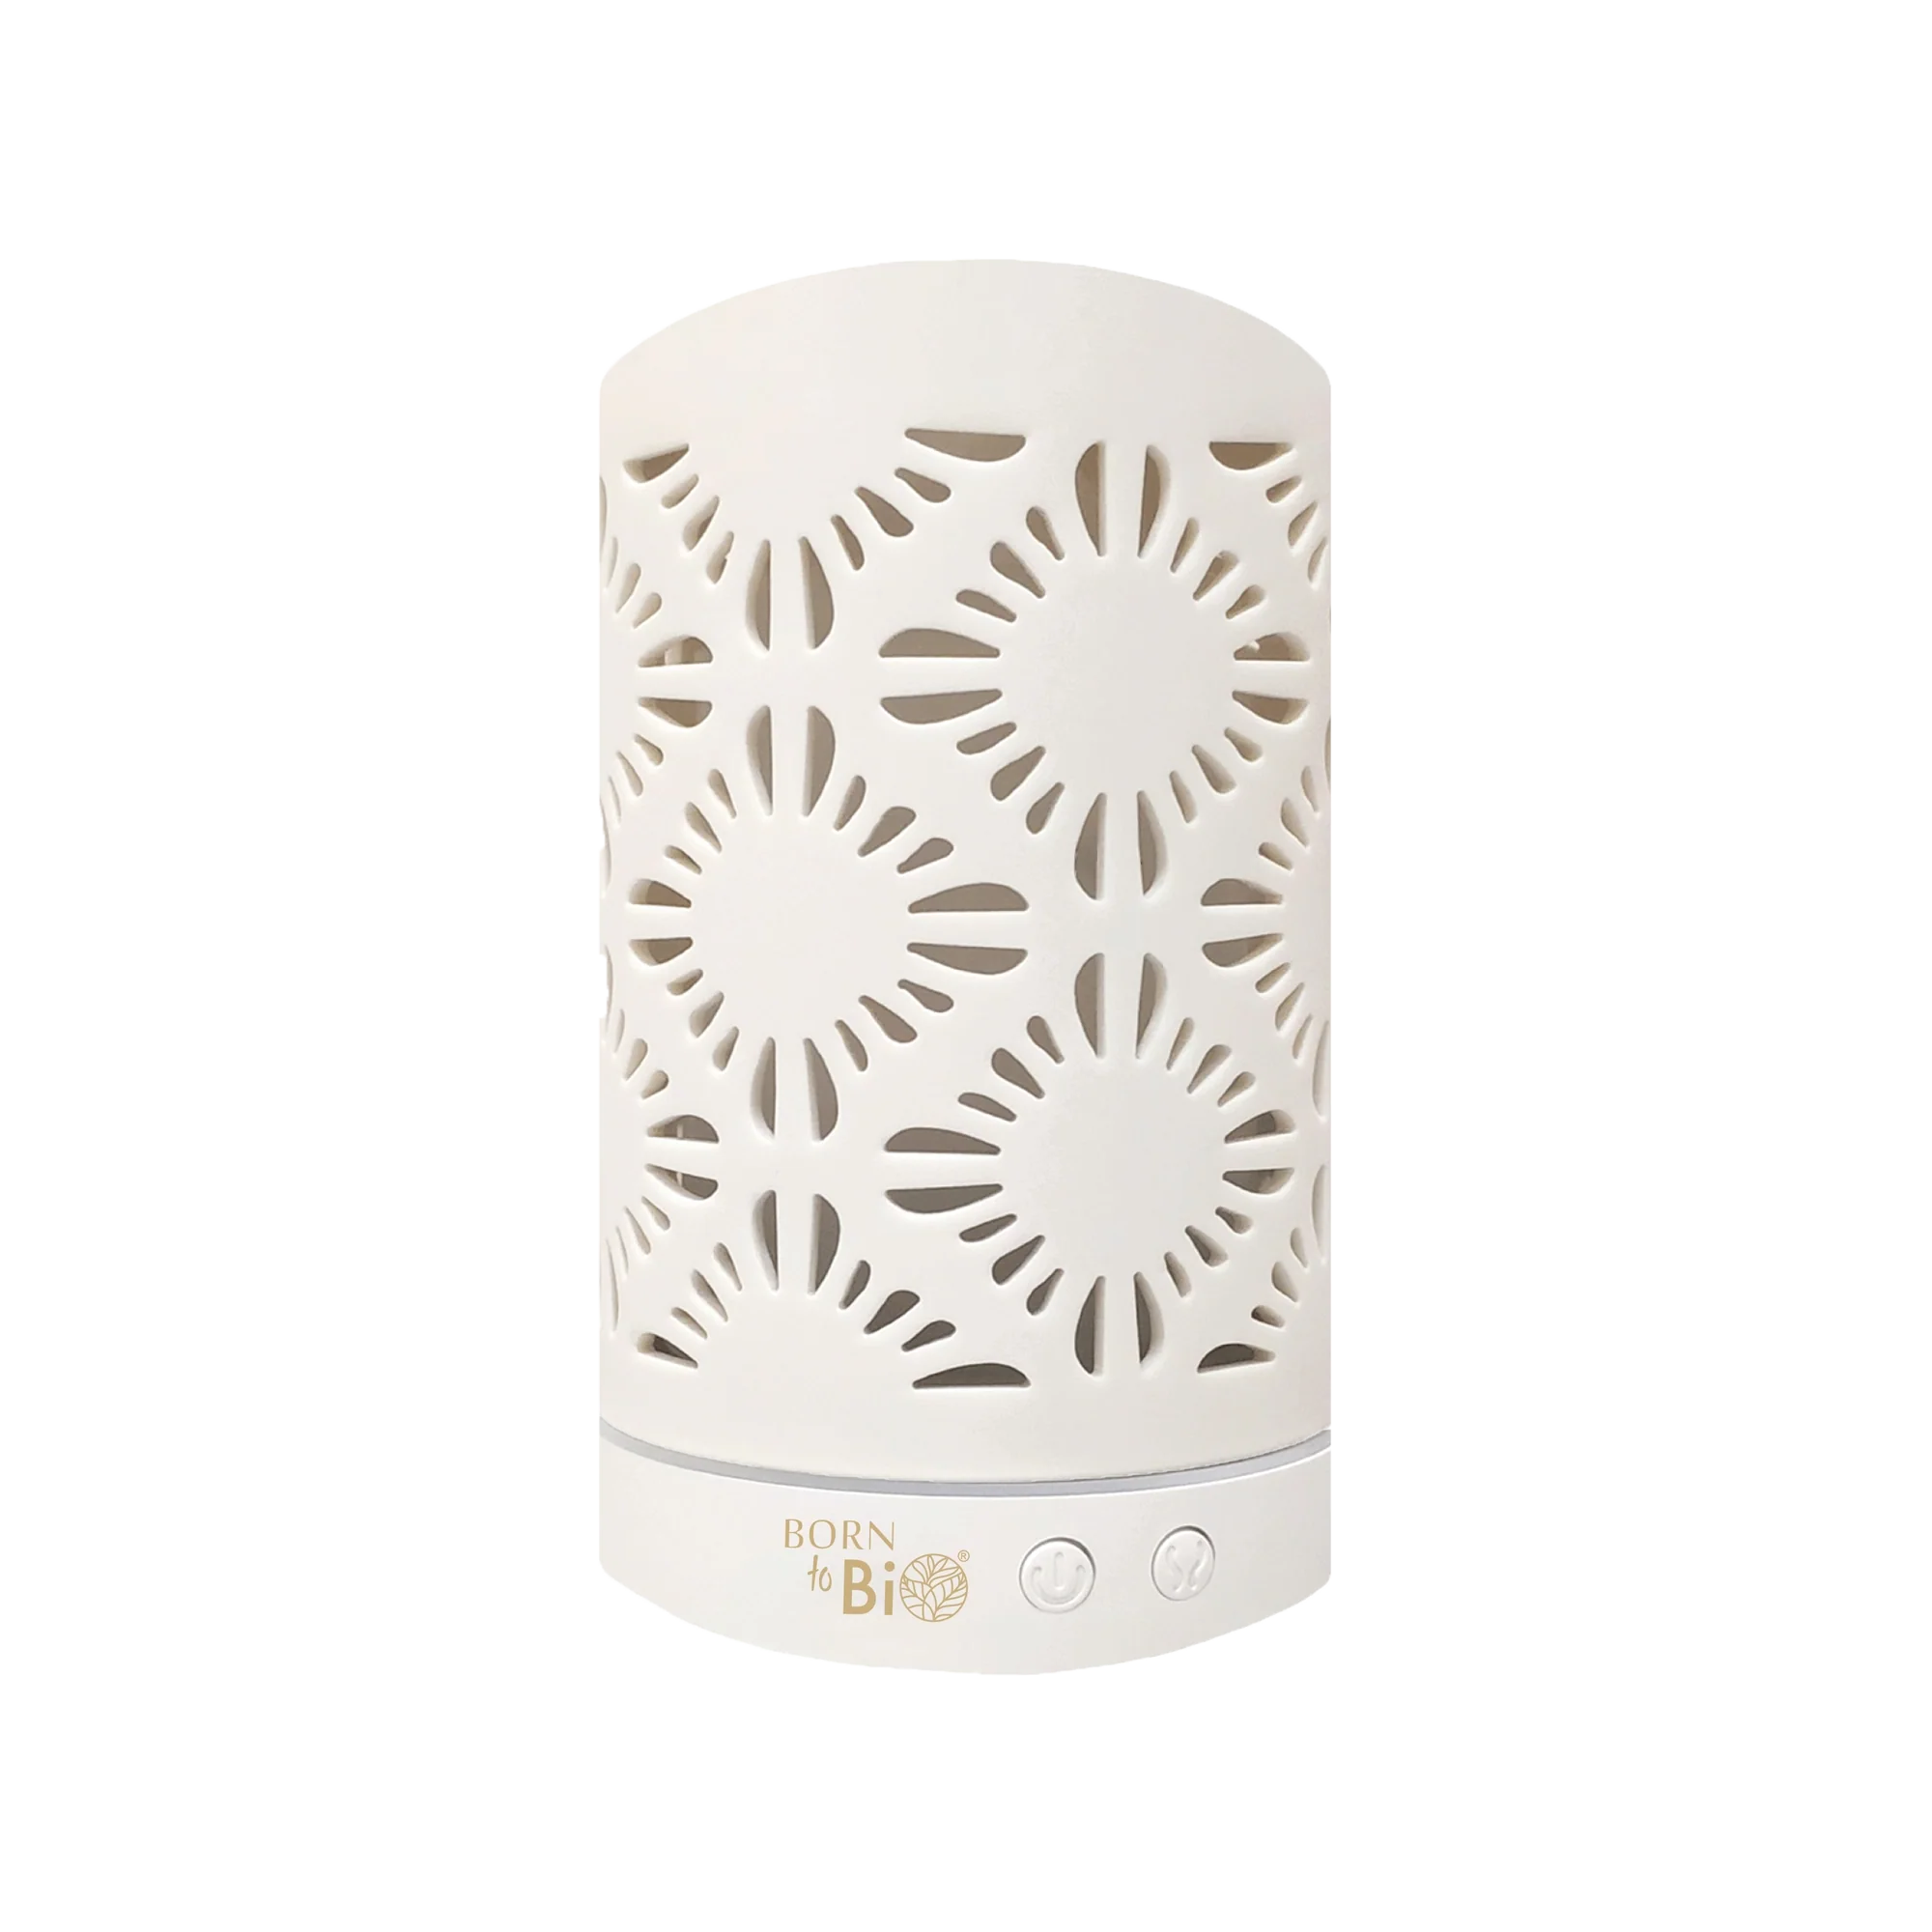 Diffusor aus weißer Keramik_White ceramic diffuser_Jetzt auf Glonnal  verfügbar.